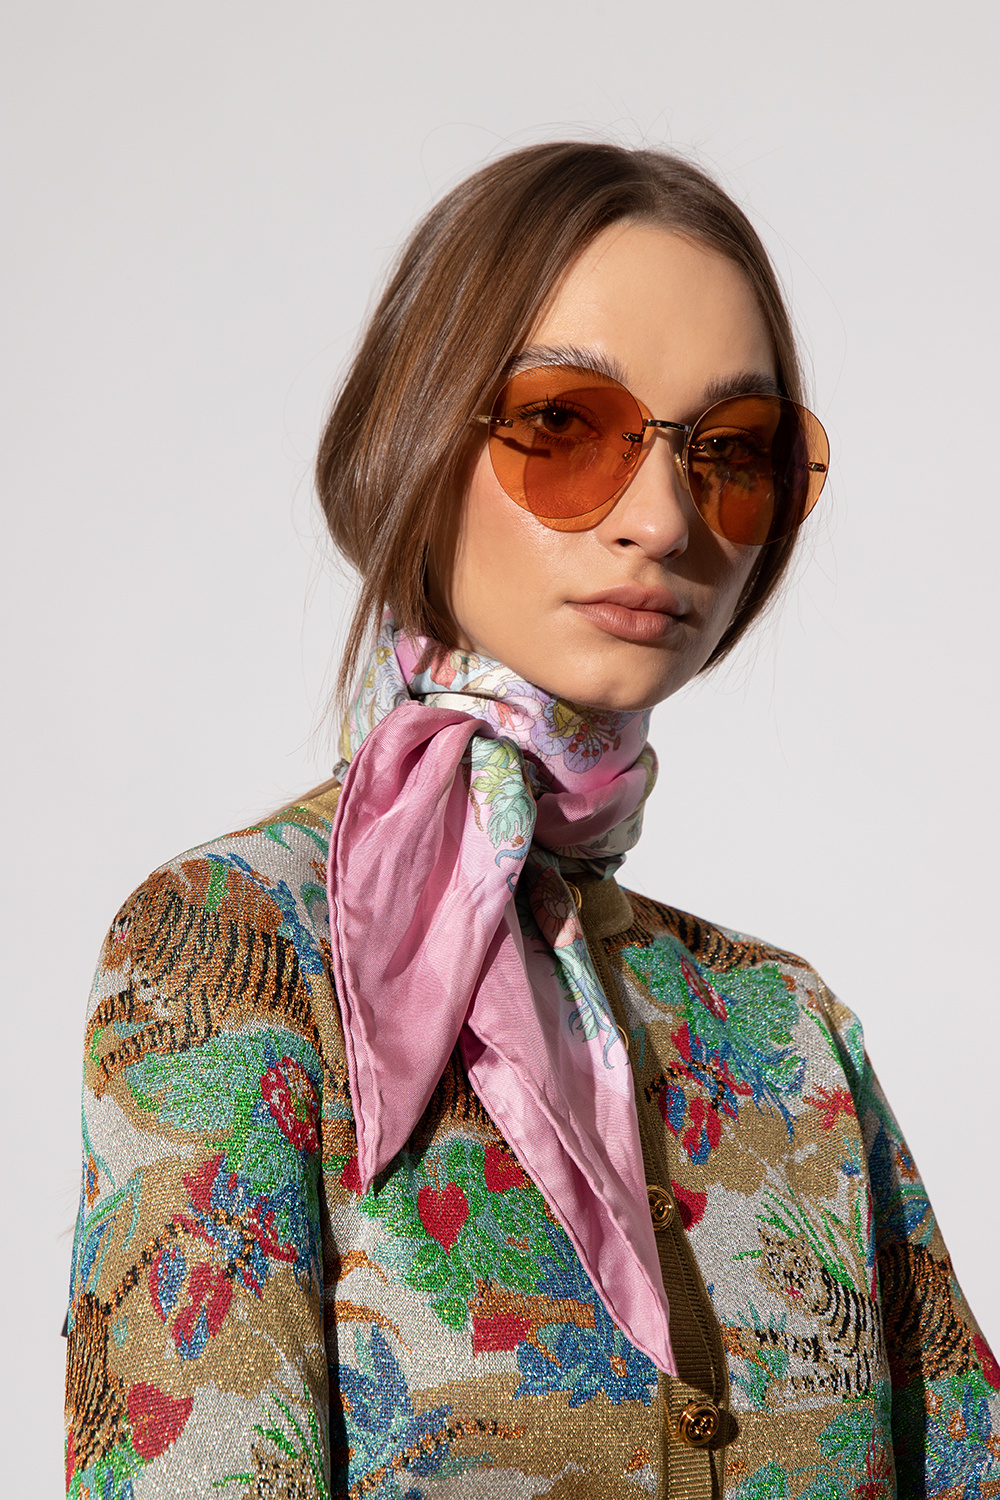 Gucci sunglasses Corfu ‘Gucci Tiger’ collection